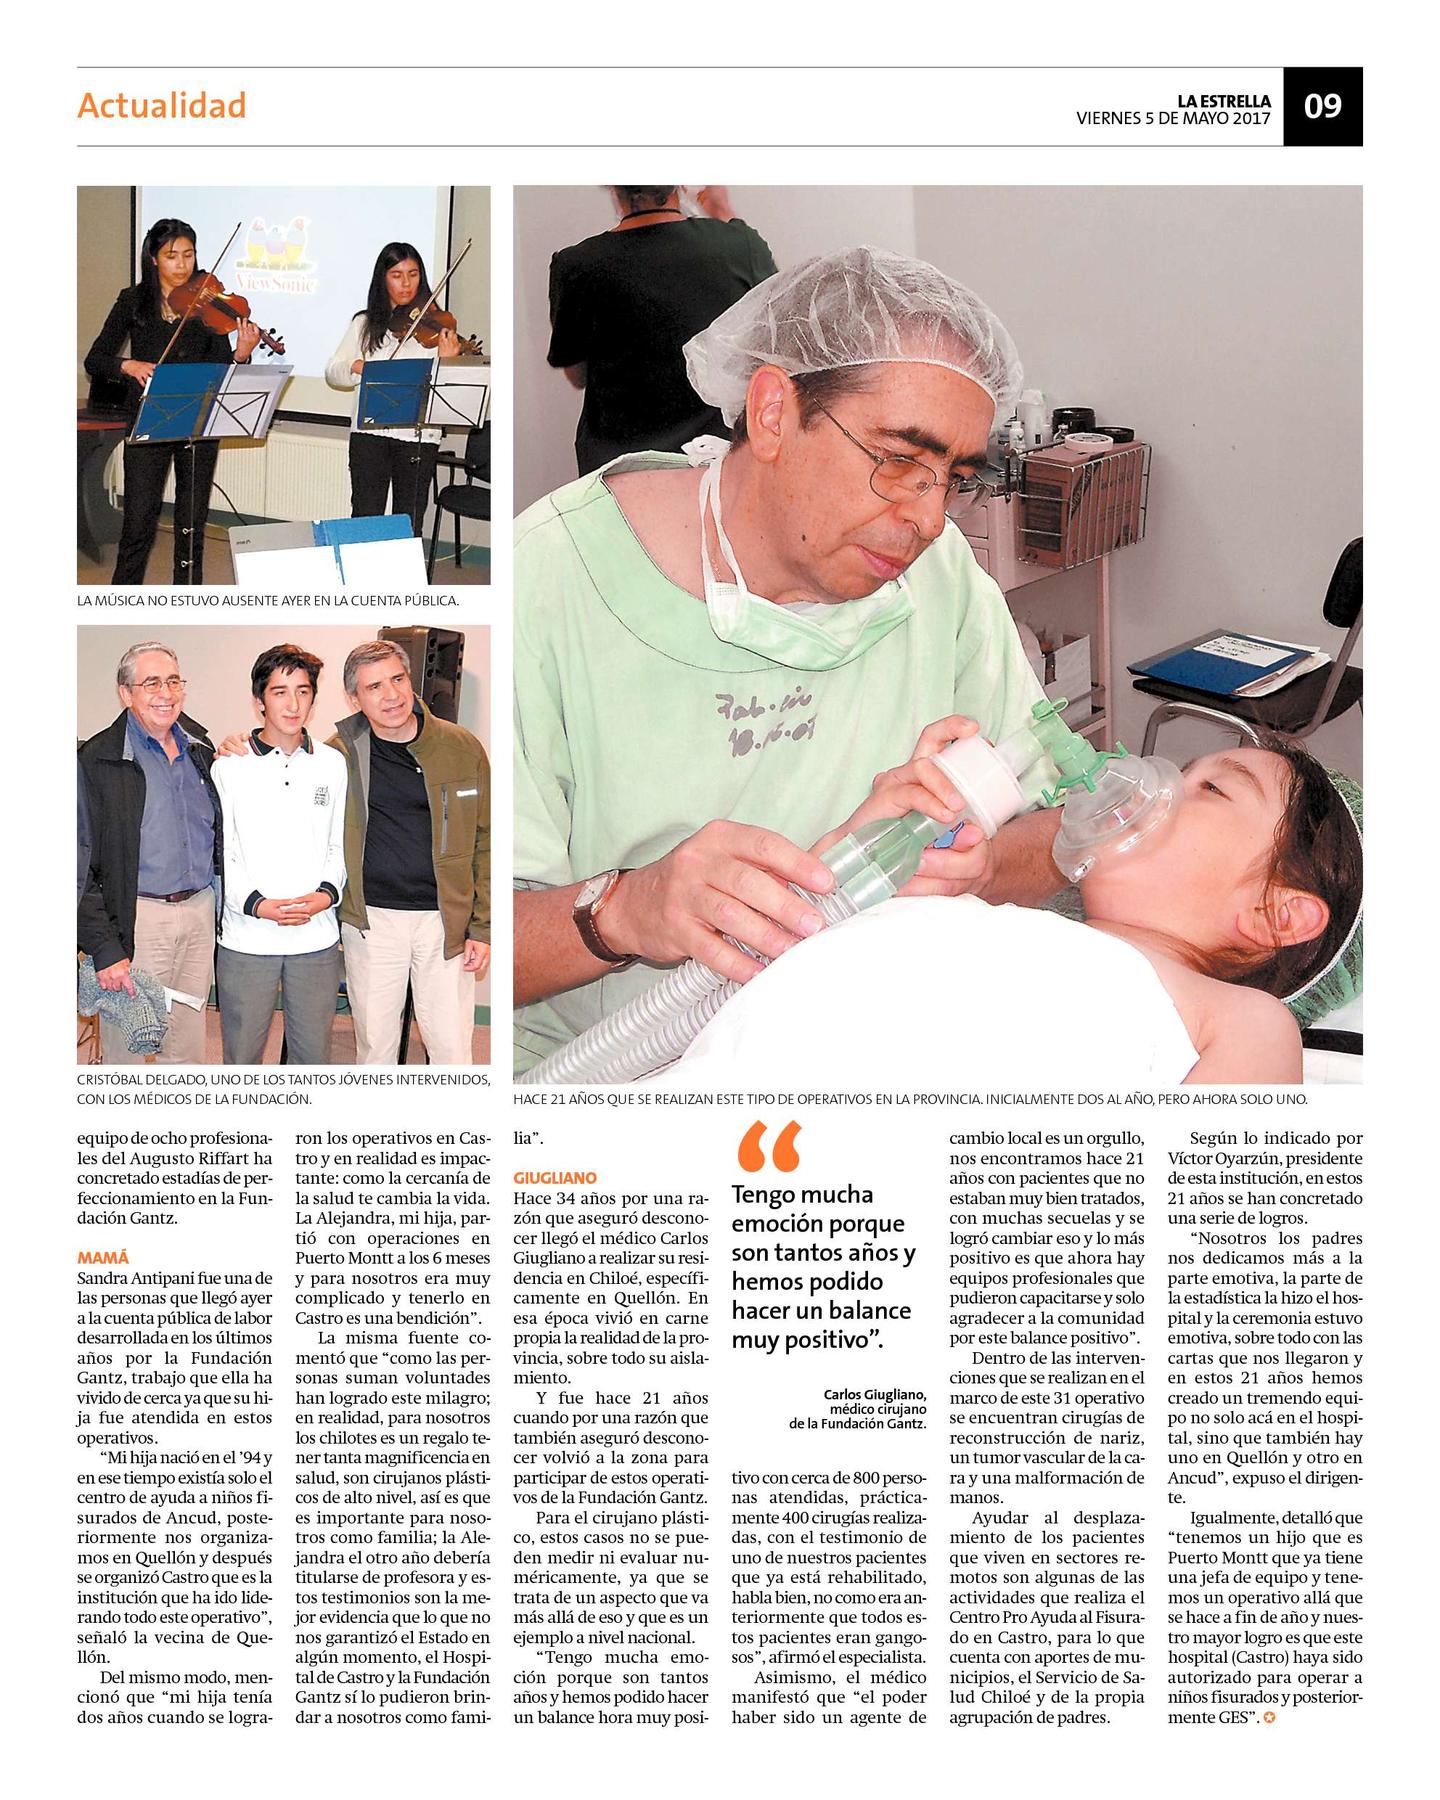 Fundación Gantz, dirigida por Dr. Carlos Giugliano, cumplió 21 años "devolviendo las sonrisas" a niños de Chiloé